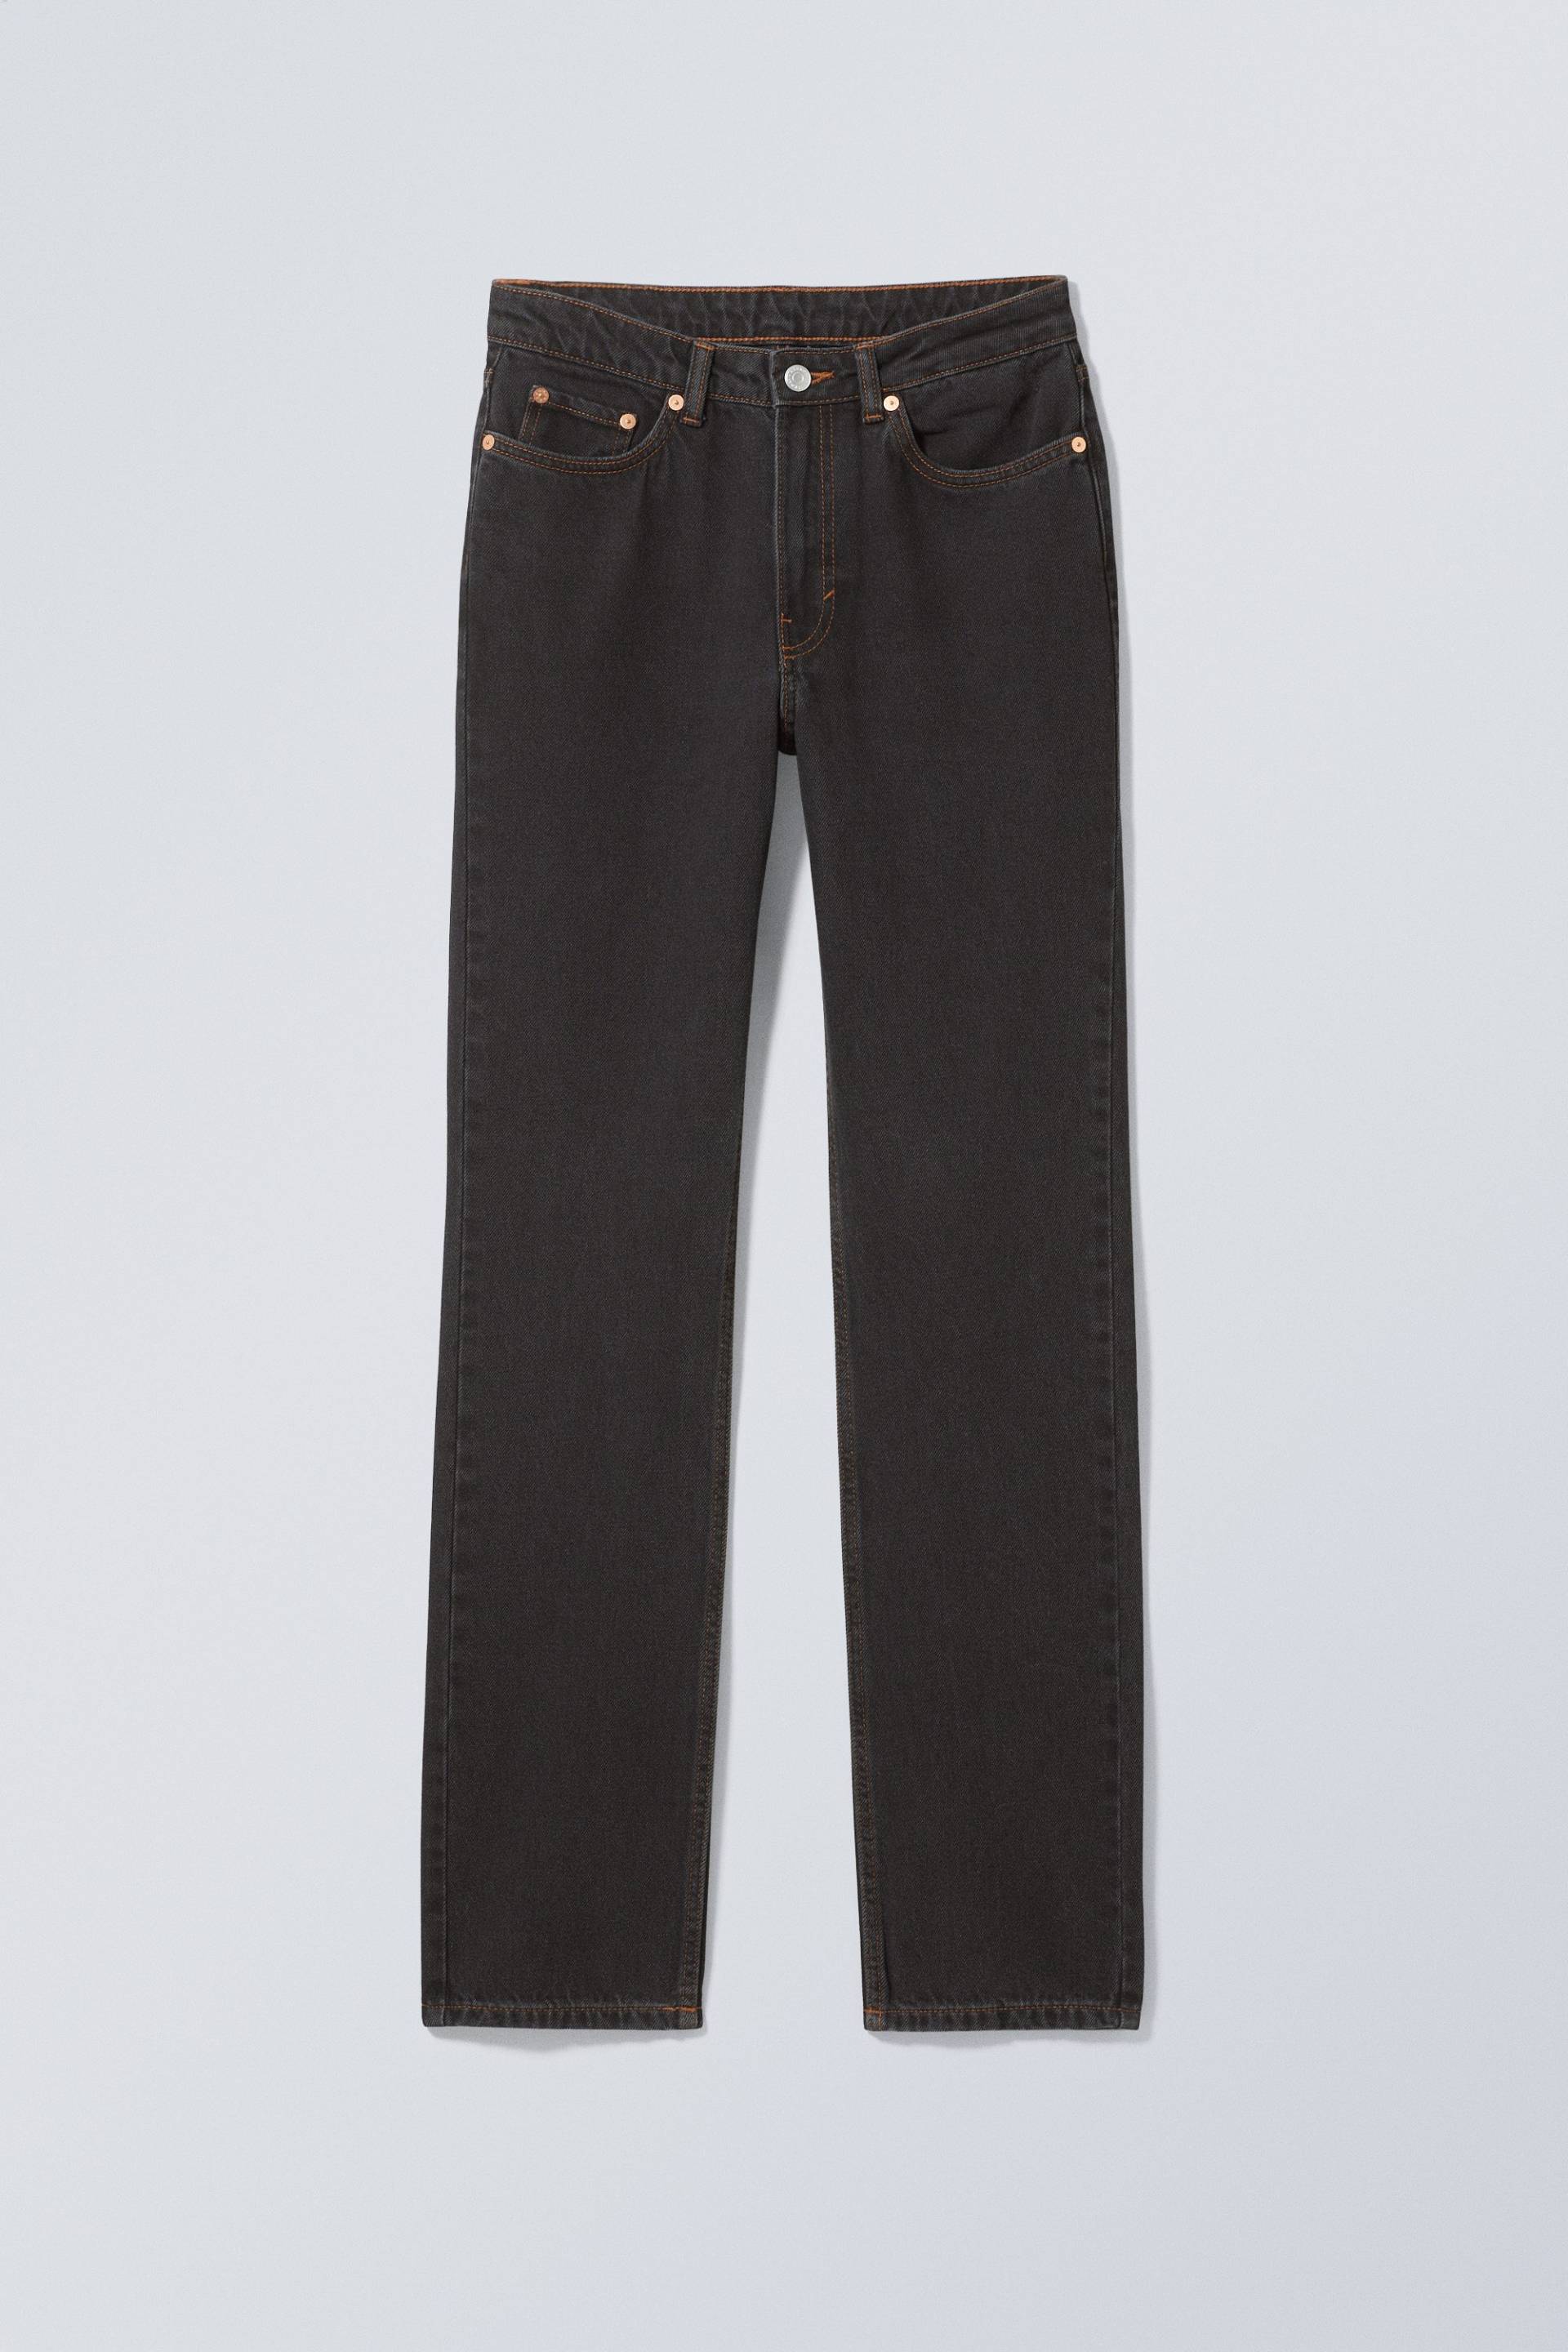 Weekday Schmale Jeans City mit hohem Bund Tintenschwarz, Skinny in Größe 26/32. Farbe: Ink black von Weekday